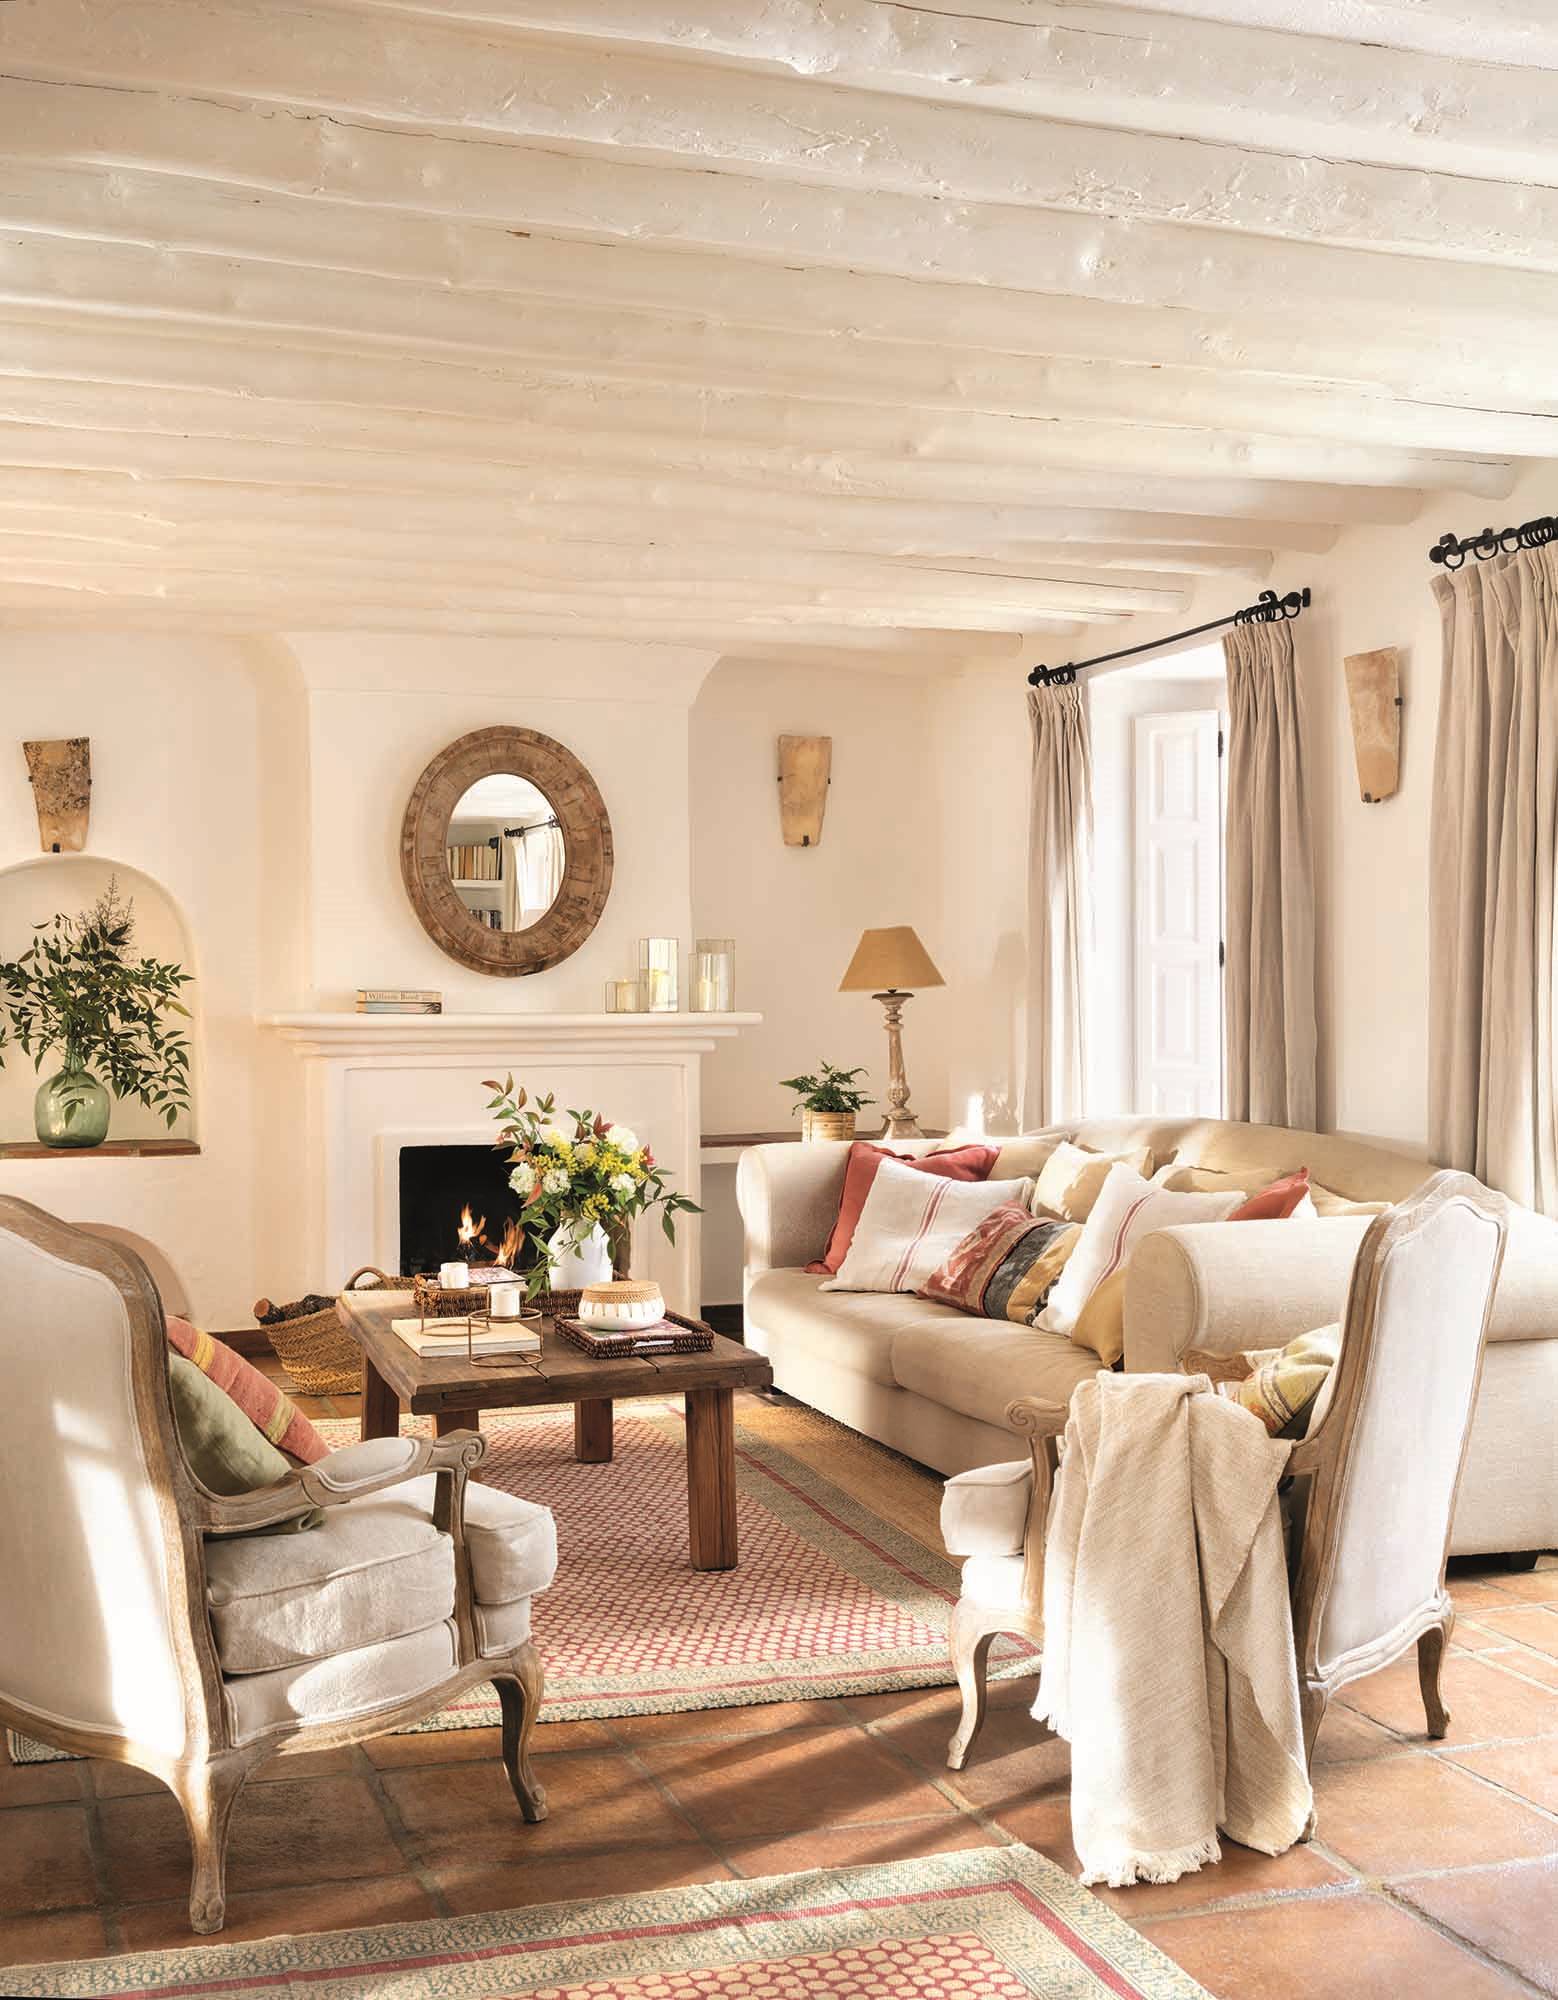 Un salón blanco con alfombras y techos con vigas, toques de color en rojo y con la madera. 